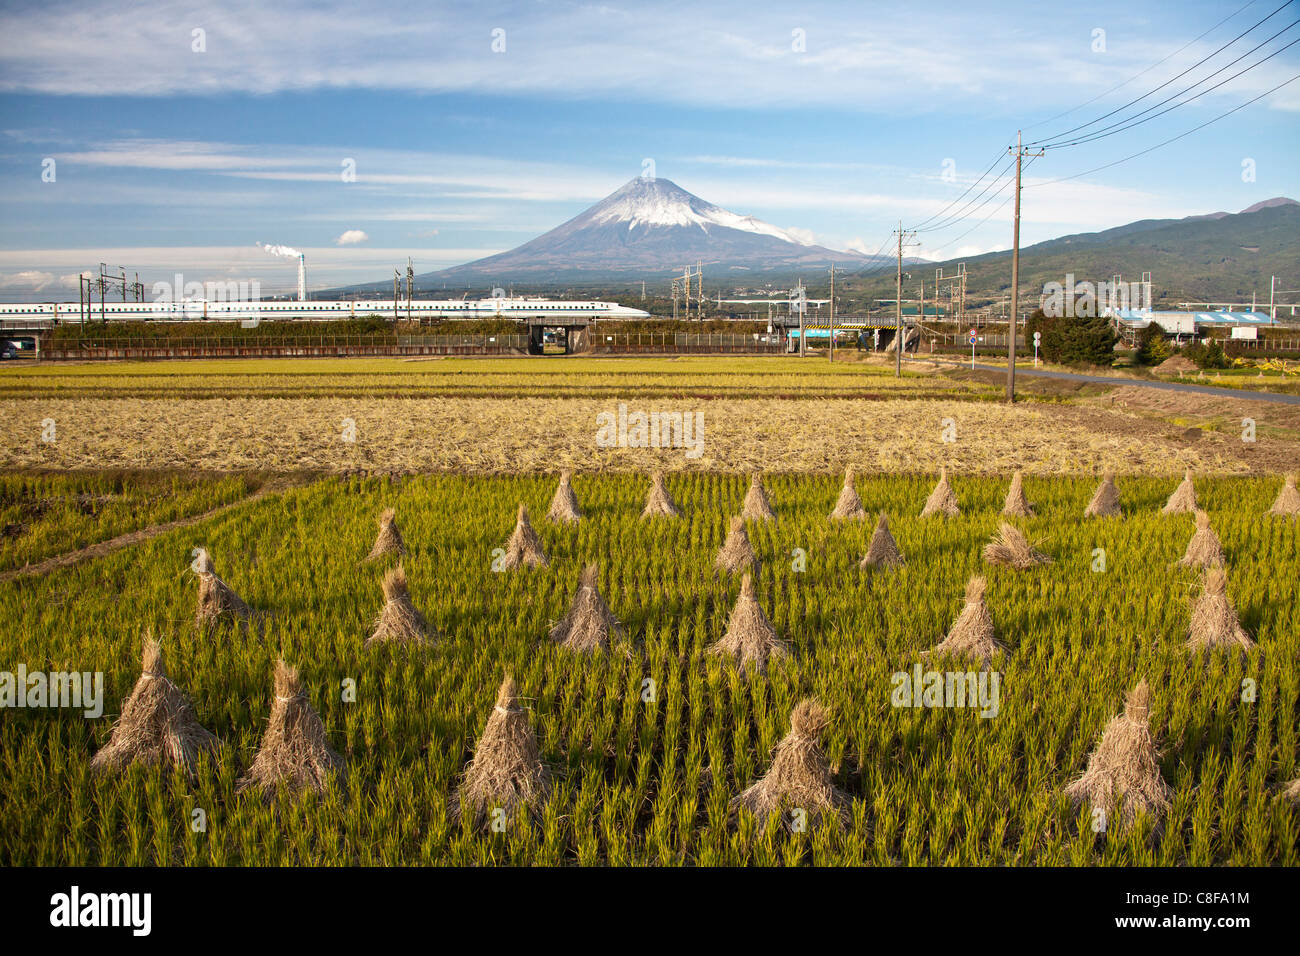 Japón, Noviembre, Asia, Fuji, la ciudad, el monte Fuji, tren de alta velocidad, el Shinkansen, el paisaje, la agricultura, el campo de arroz, cultivo de ric Foto de stock